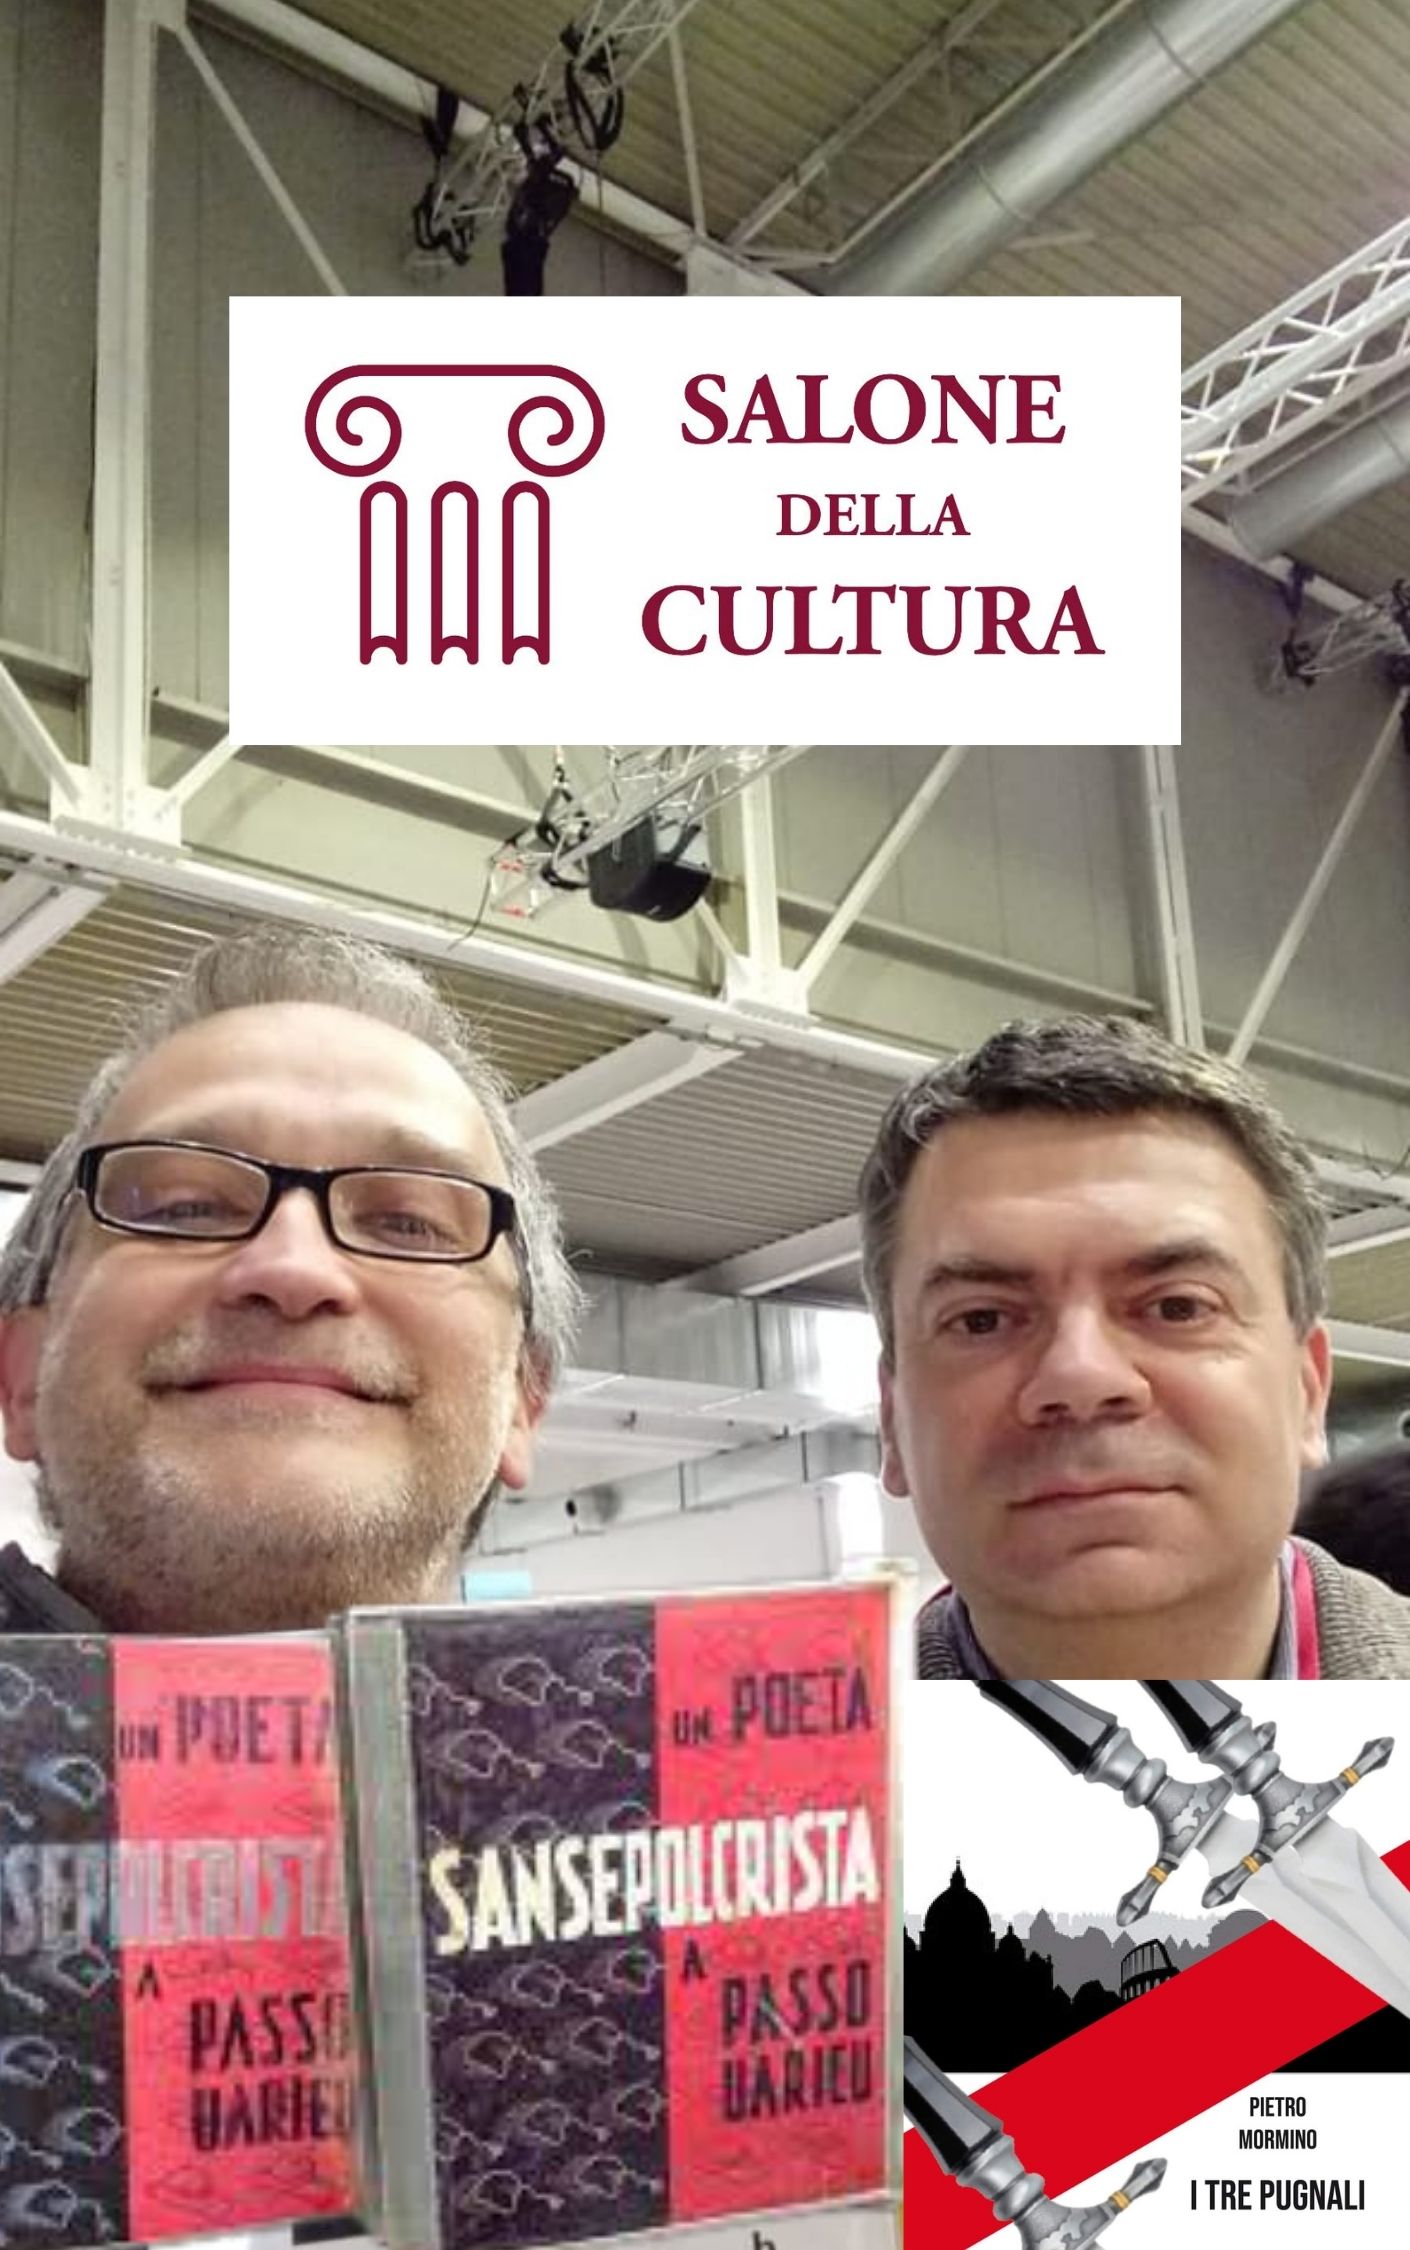 A Milano a caccia di libri: con il cacciatore di libri al Salone della cultura 2021